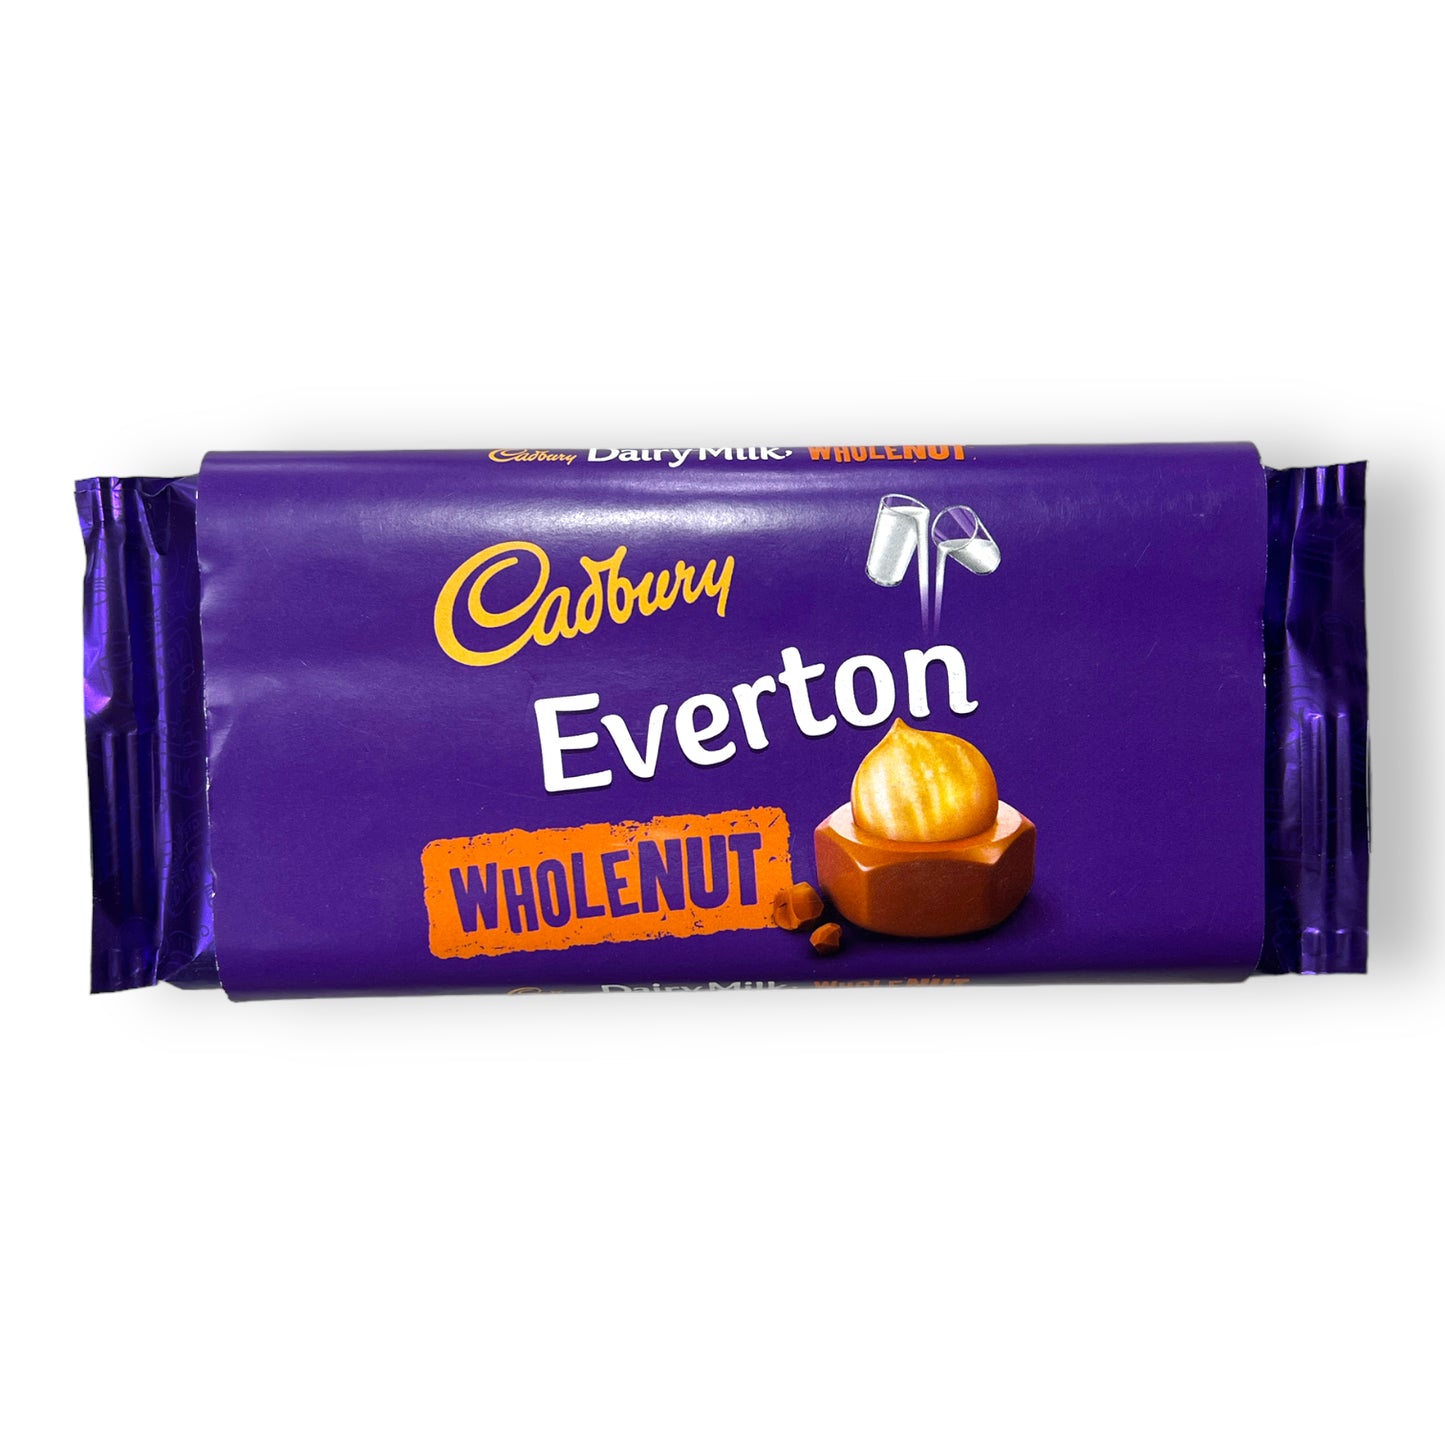 Everton - Cadbury Dairy Milk (Various Flavours)